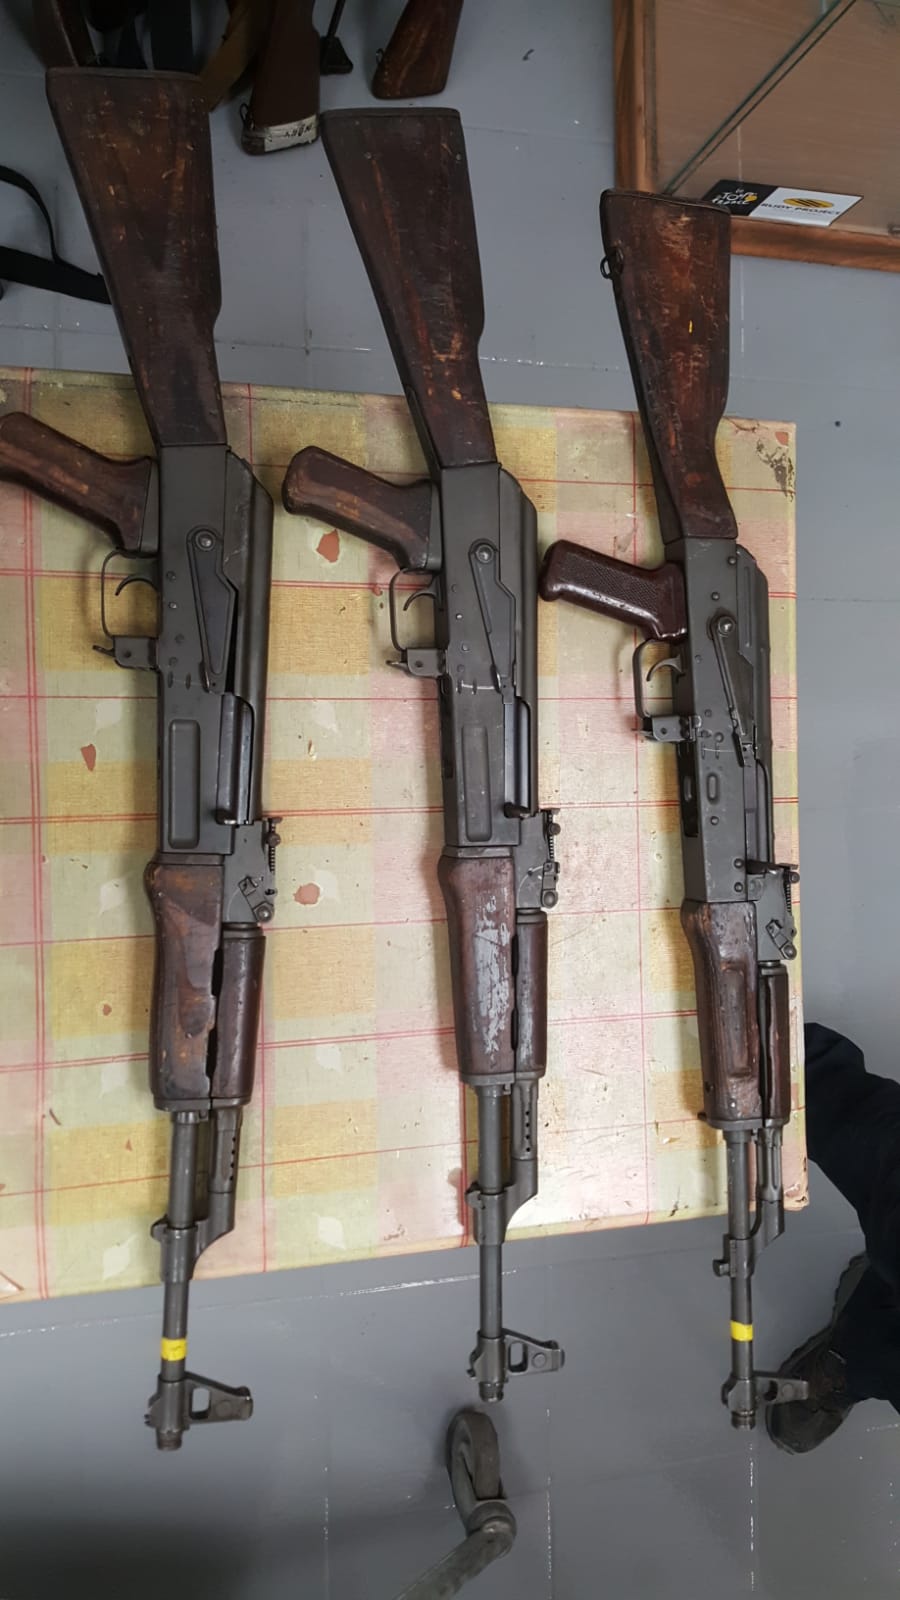 AK47 and AKM rifles